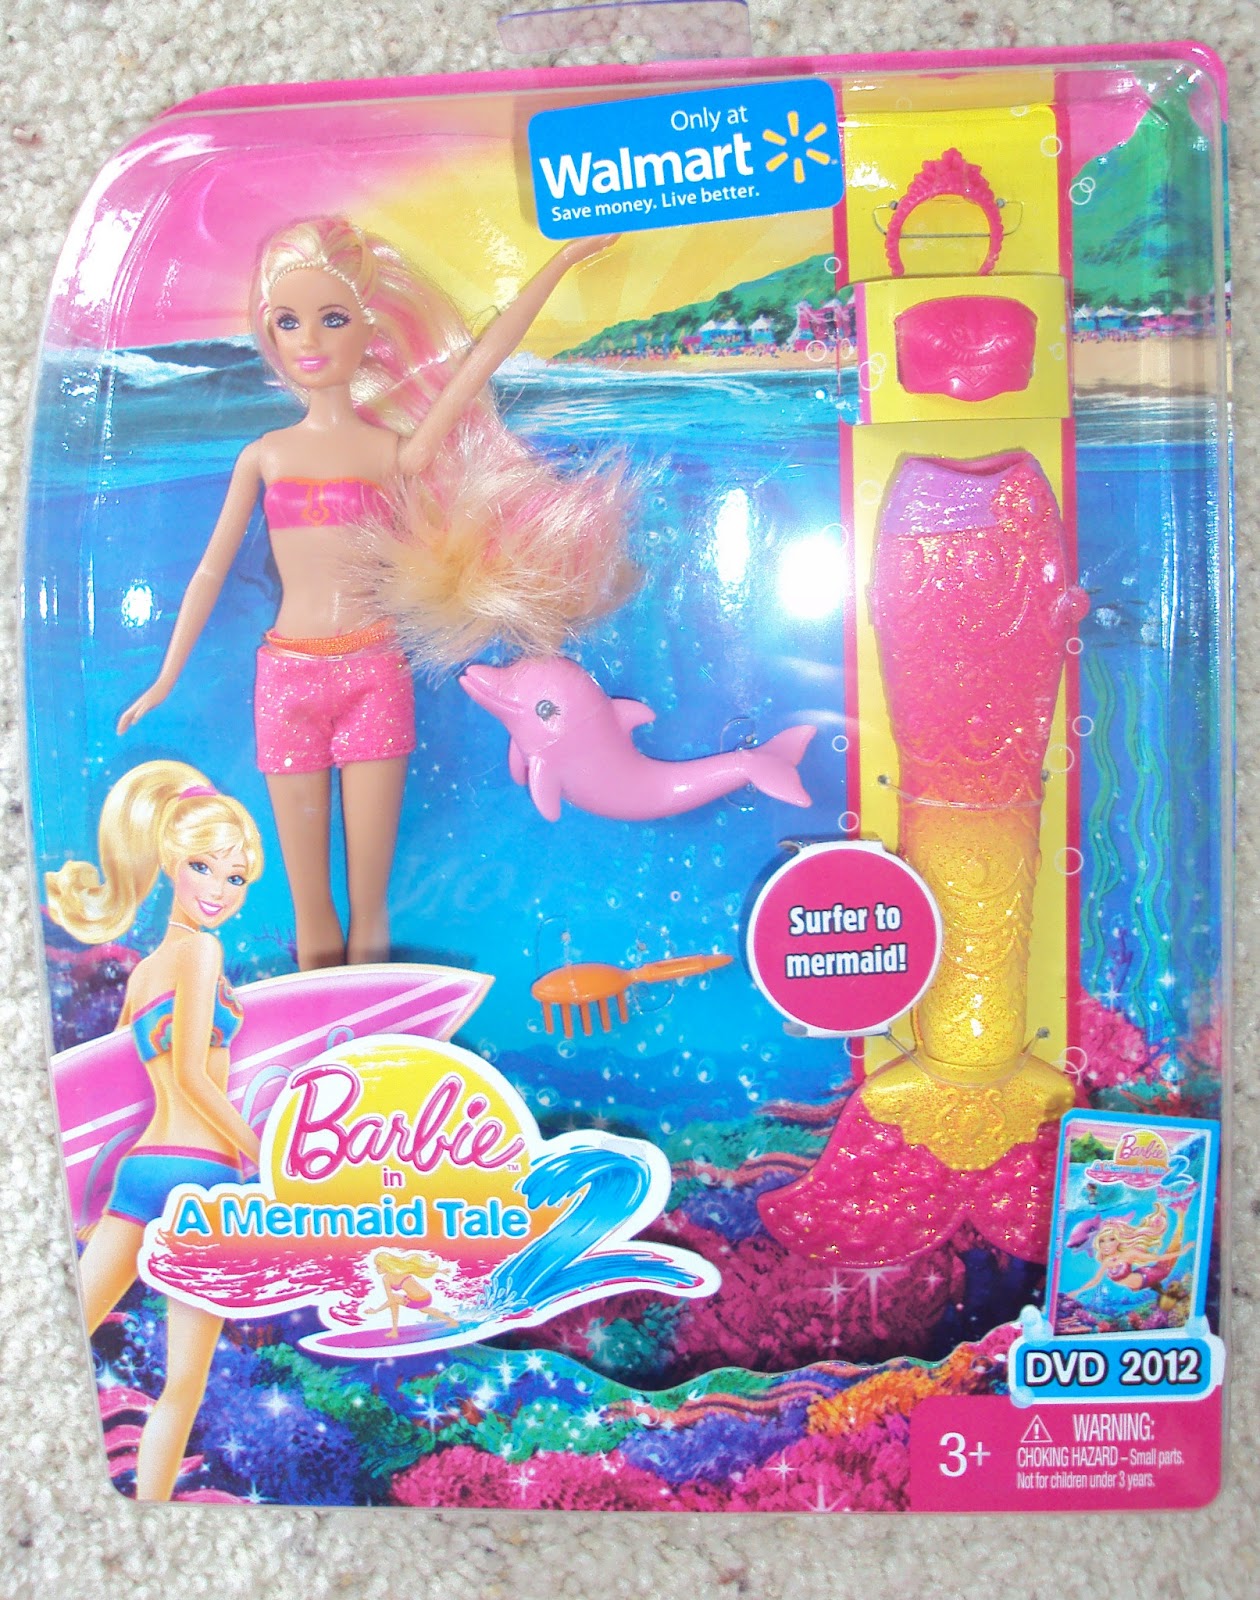 Мини куклы барби. Кукла Барби приключение Русалочки. Barbie in a Mermaid Tale куклы. Кукла Барби Русалка Мерлия. Кукла Barbie Mermaid Tale.